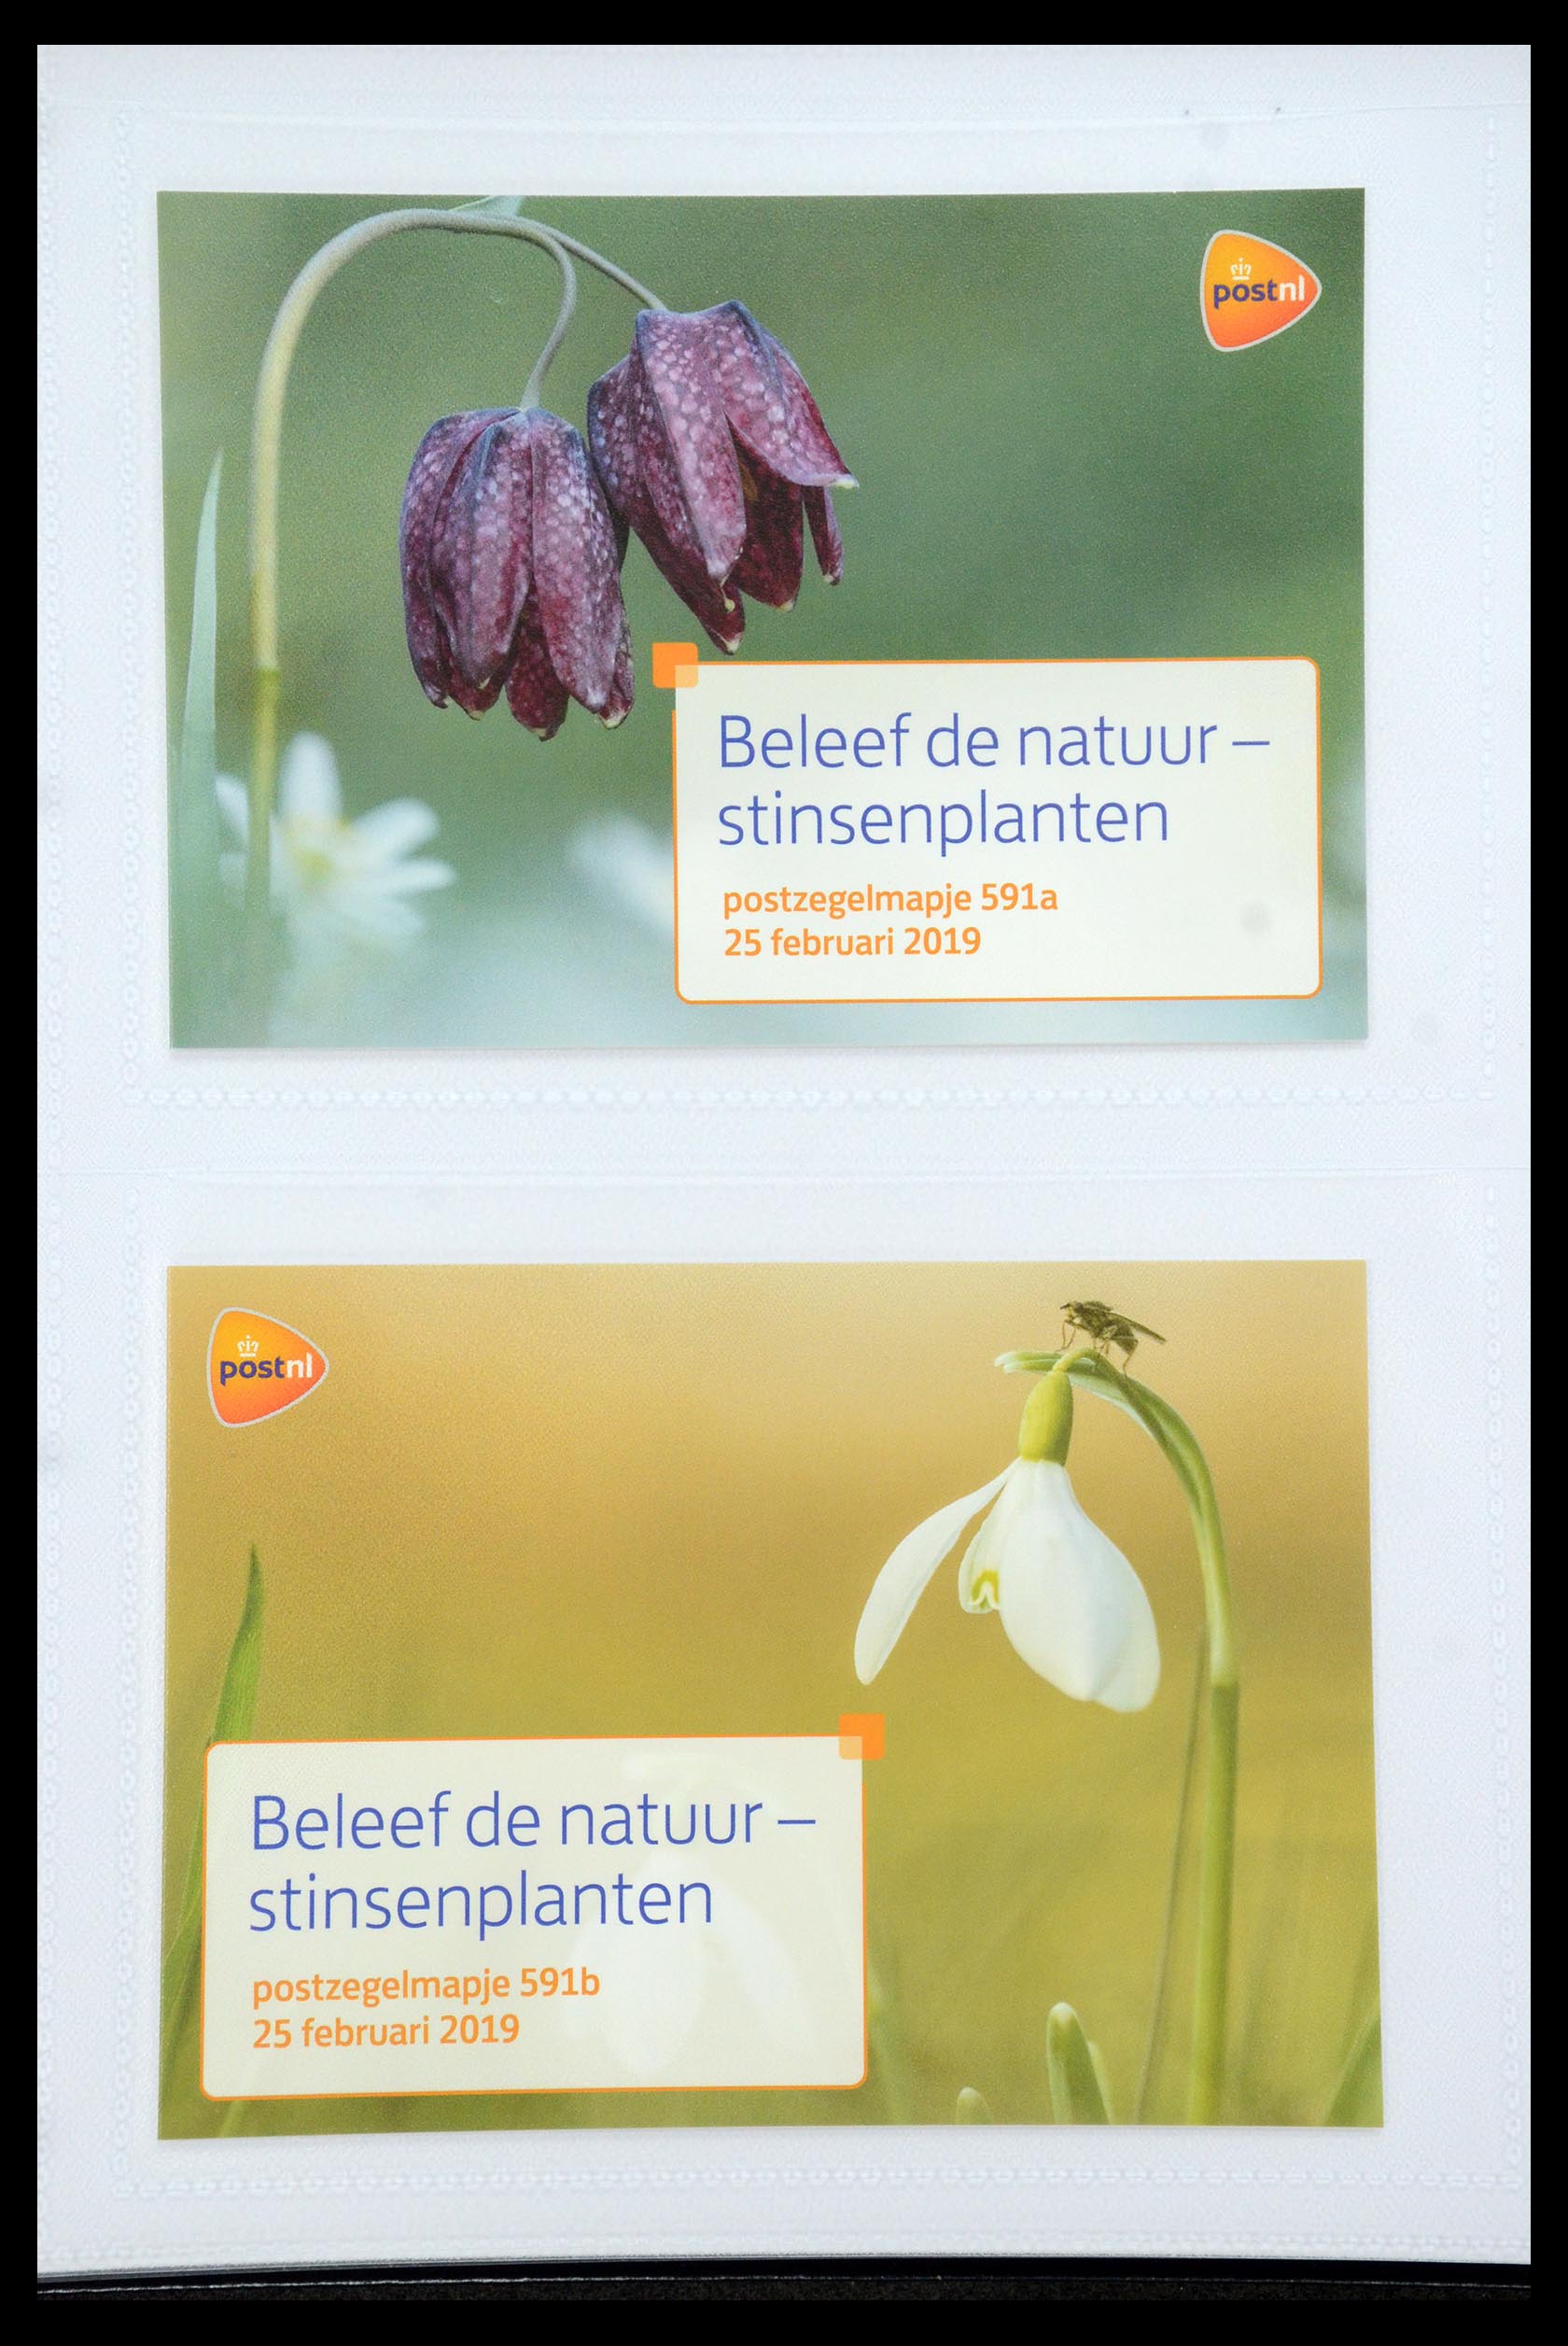 35947 357 - Stamp Collection 35947 Netherlands PTT presentation packs 1982-2019!